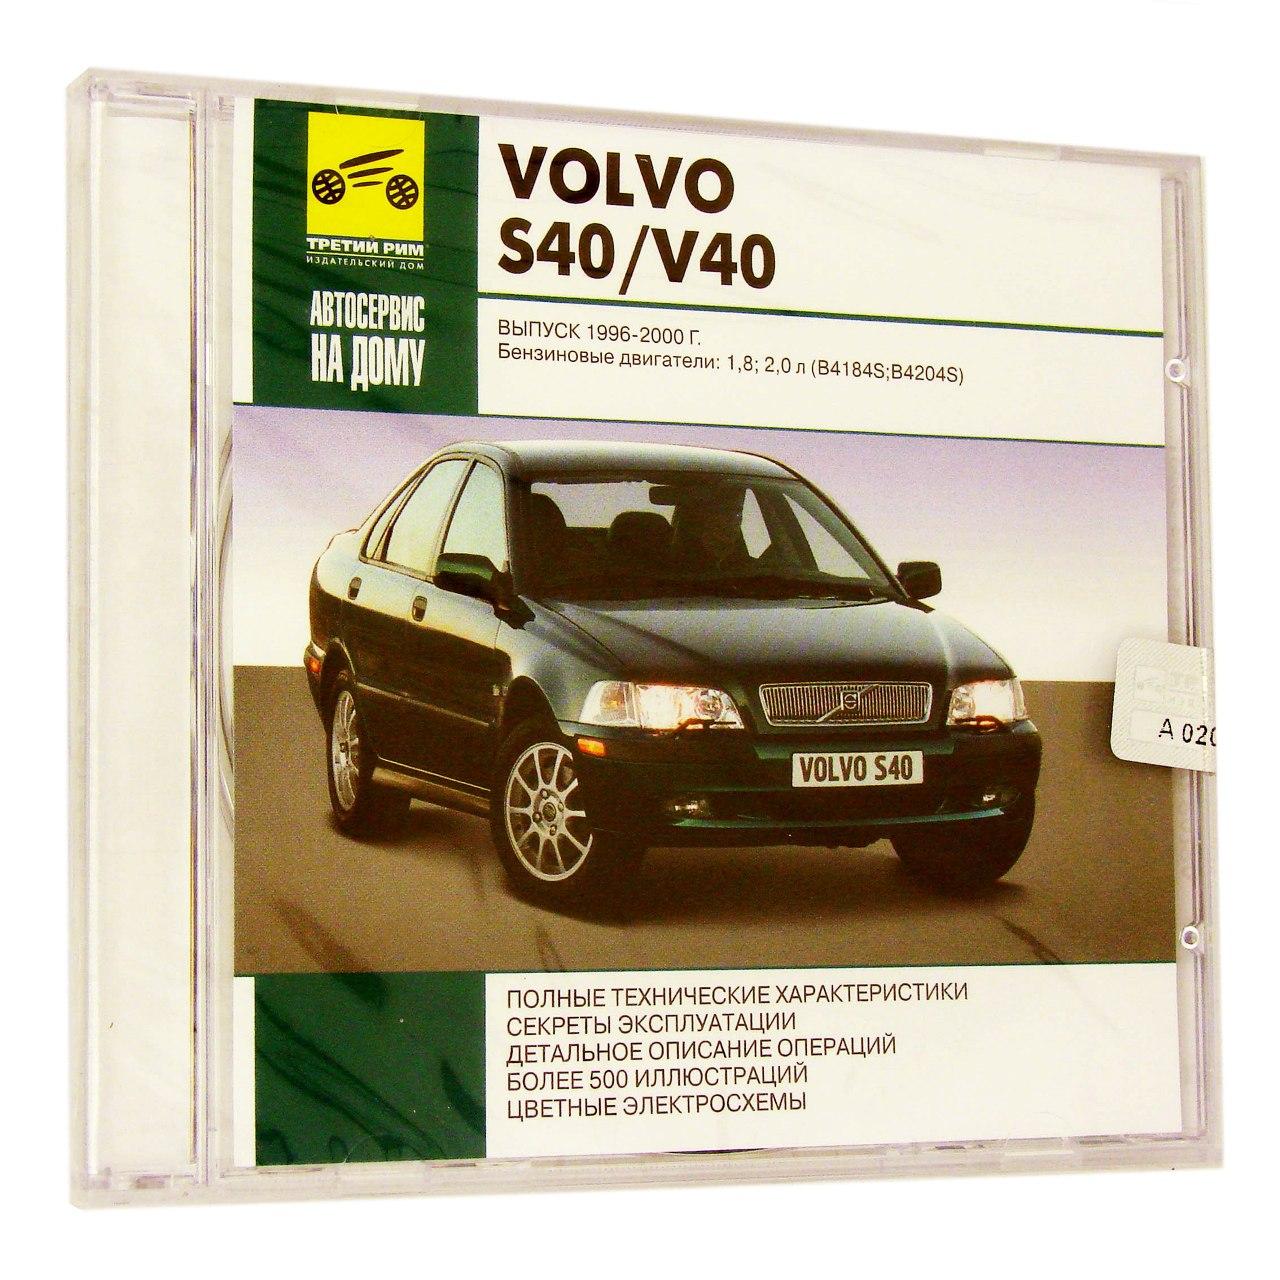 Компьютерный компакт-диск Volvo S40/V40 Выпуск 1996-2000: Автосервис на дому (ПК), фирма "RMG Multimedia", 1CD